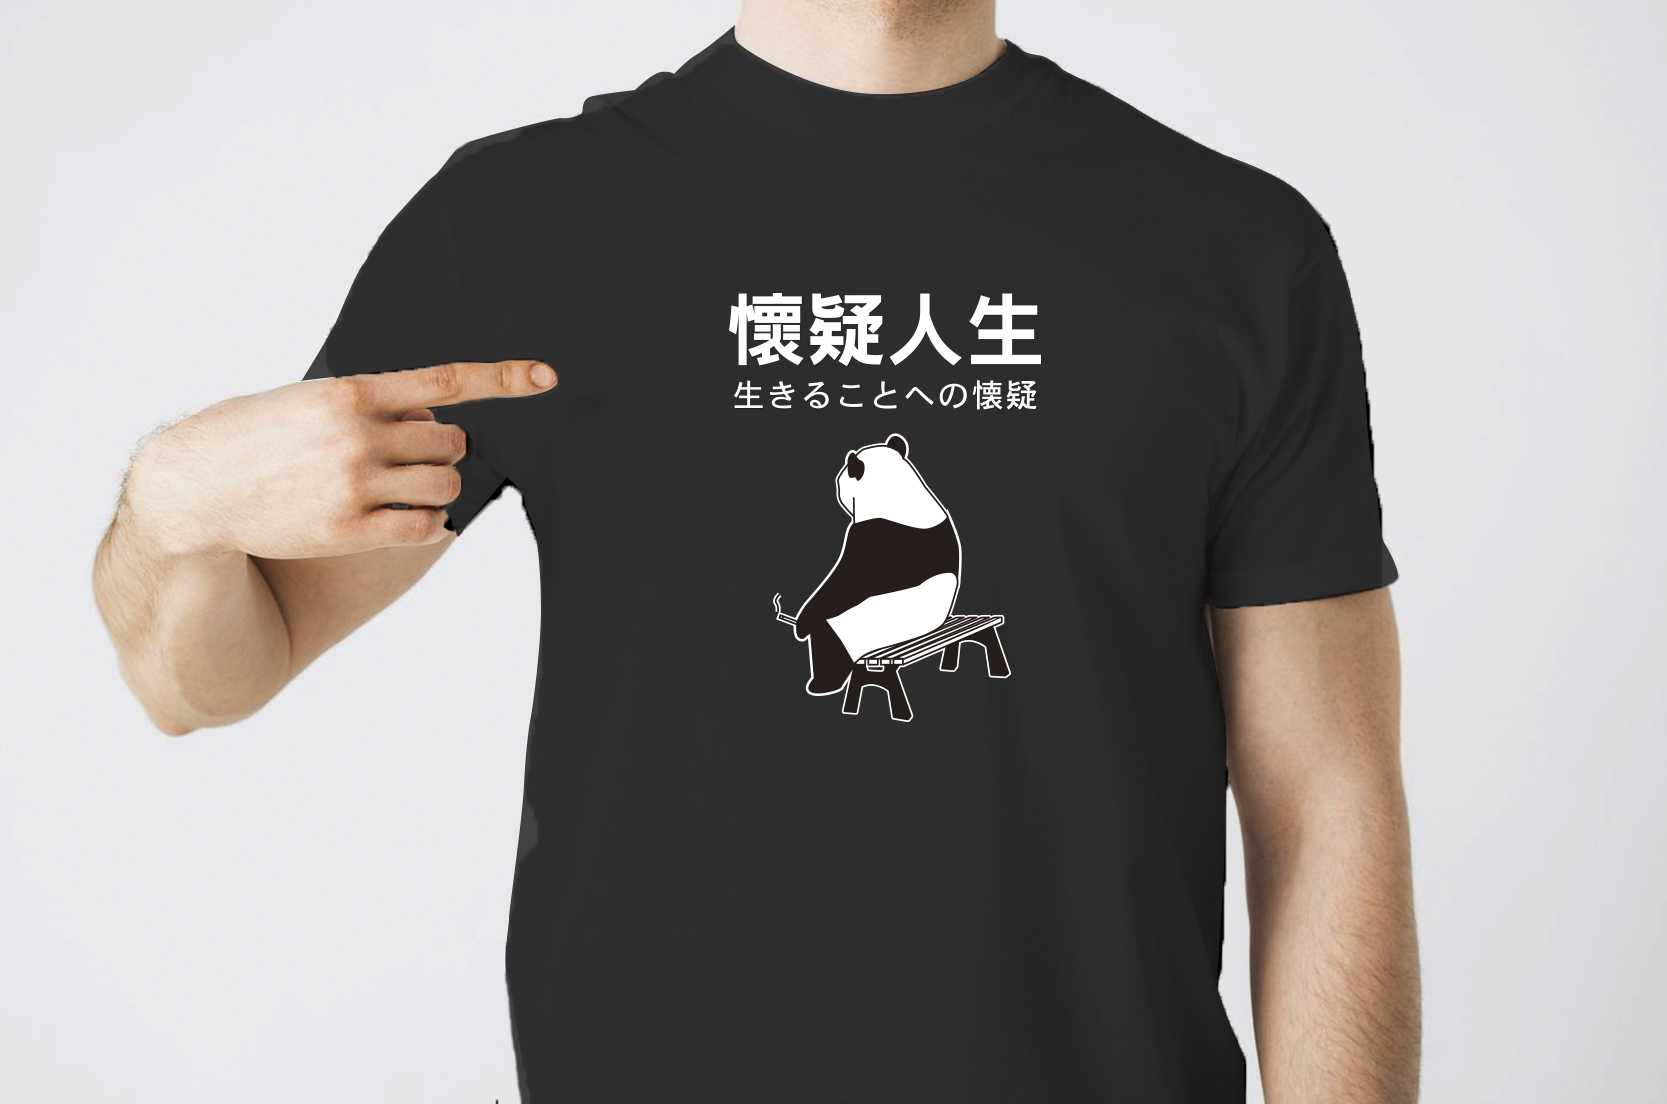 懷疑人生熊貓T恤(黑色款)的第1張圖(客製化公司制服、班服製作、團體服製作等示意或作品圖)